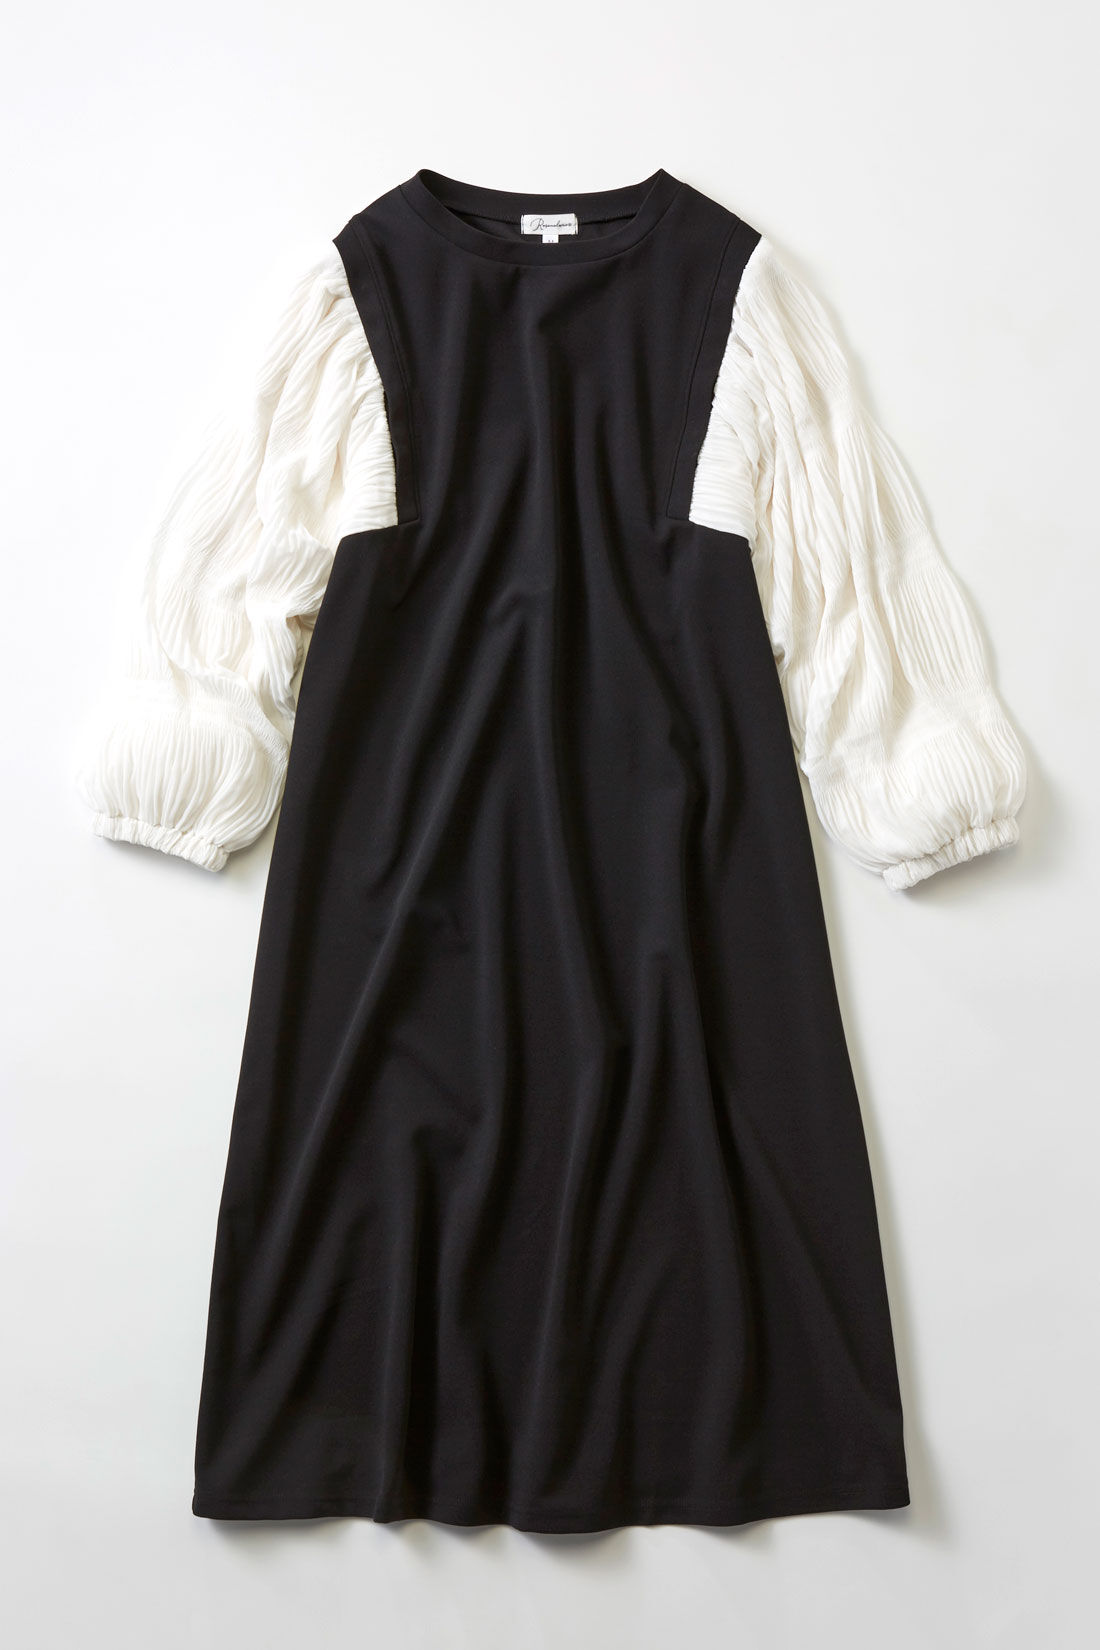 フェリシモMama|［Mama select］マタニティ・産後使える　授乳しやすい　袖シャーリング素材ワンピース〈ブラック〉|ブラウスにジャンパースカートを重ね着したような、切り替えデザインのワンピース。